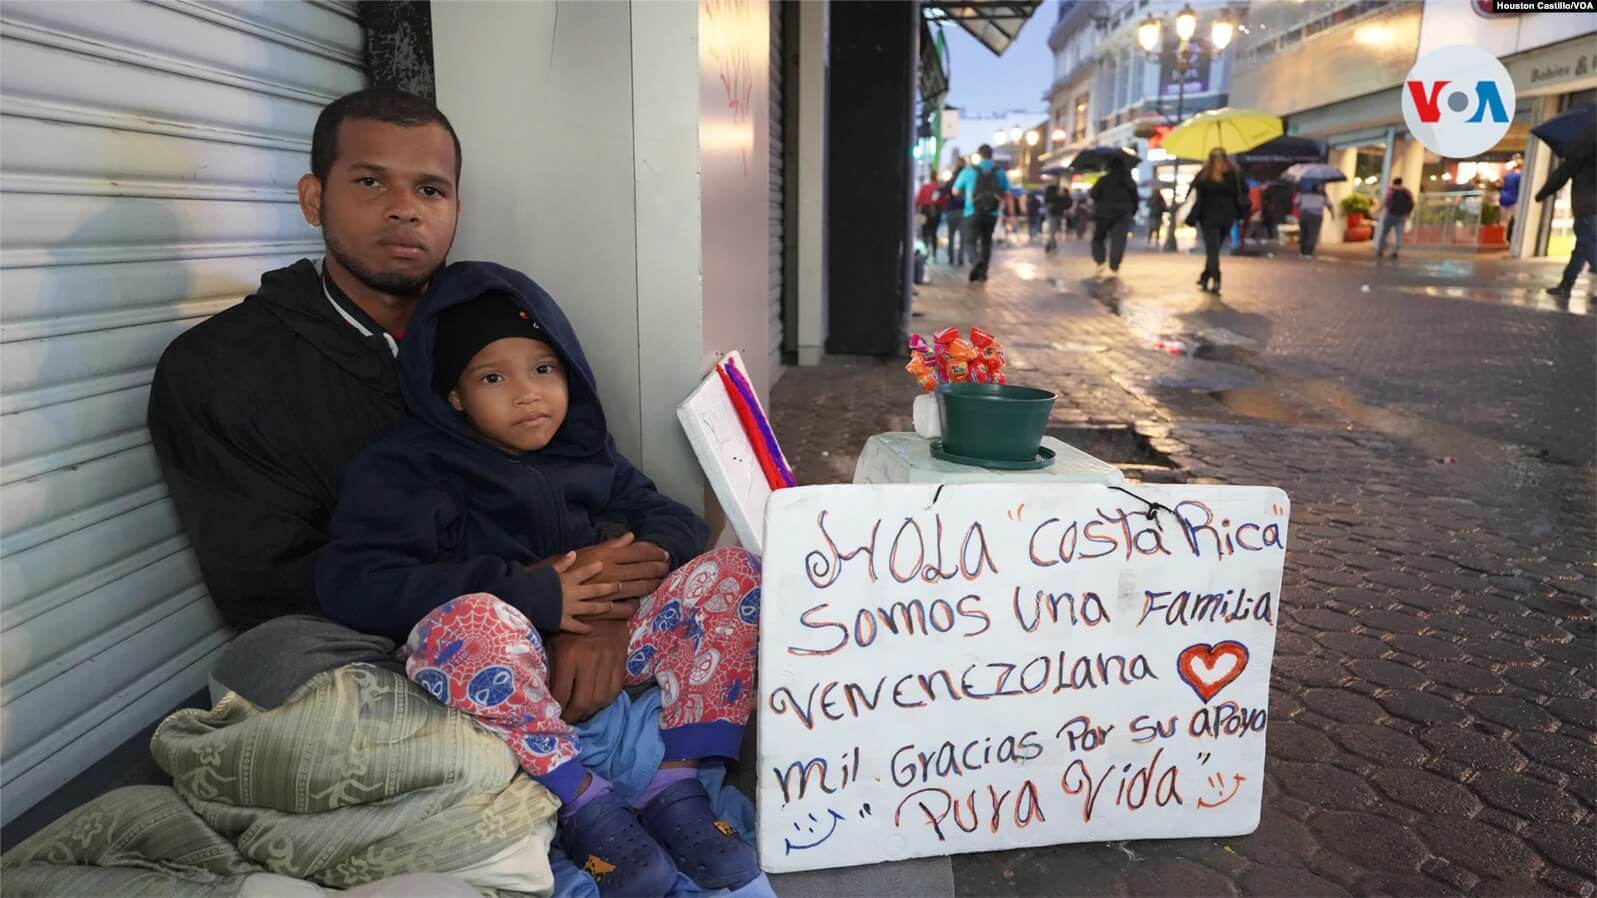 Un migrante venezolano junto a su hijo en una calle céntrica de San José, Costa Rica. Foto: Houston Castillo, VOA